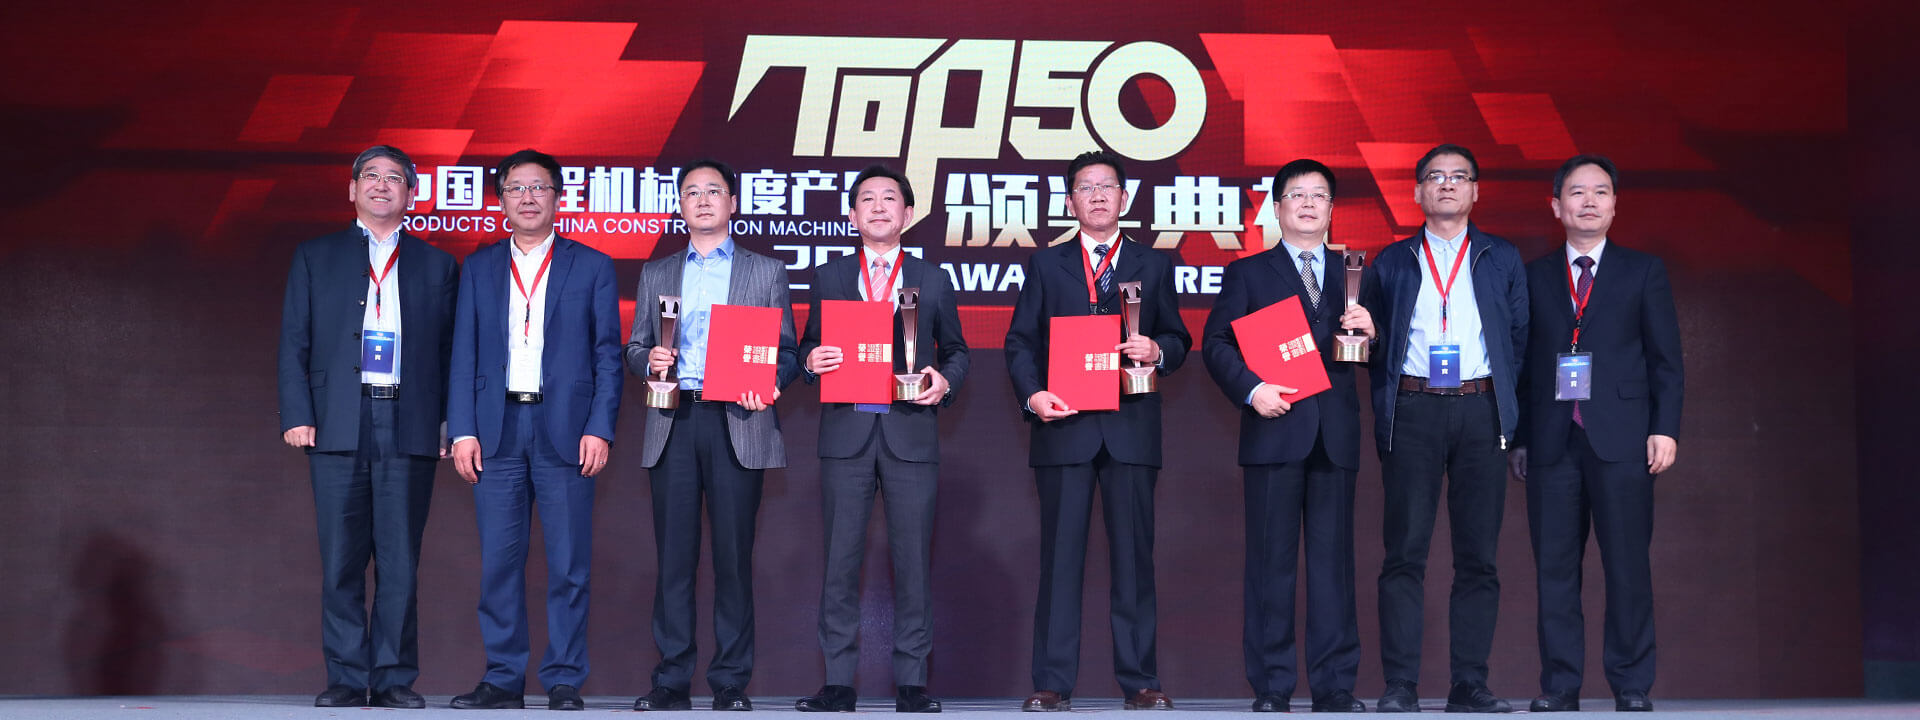 日立建机ZH200-5A混合动力液压挖掘机荣获中国工程机械产品年度TOP50技术创新金奖